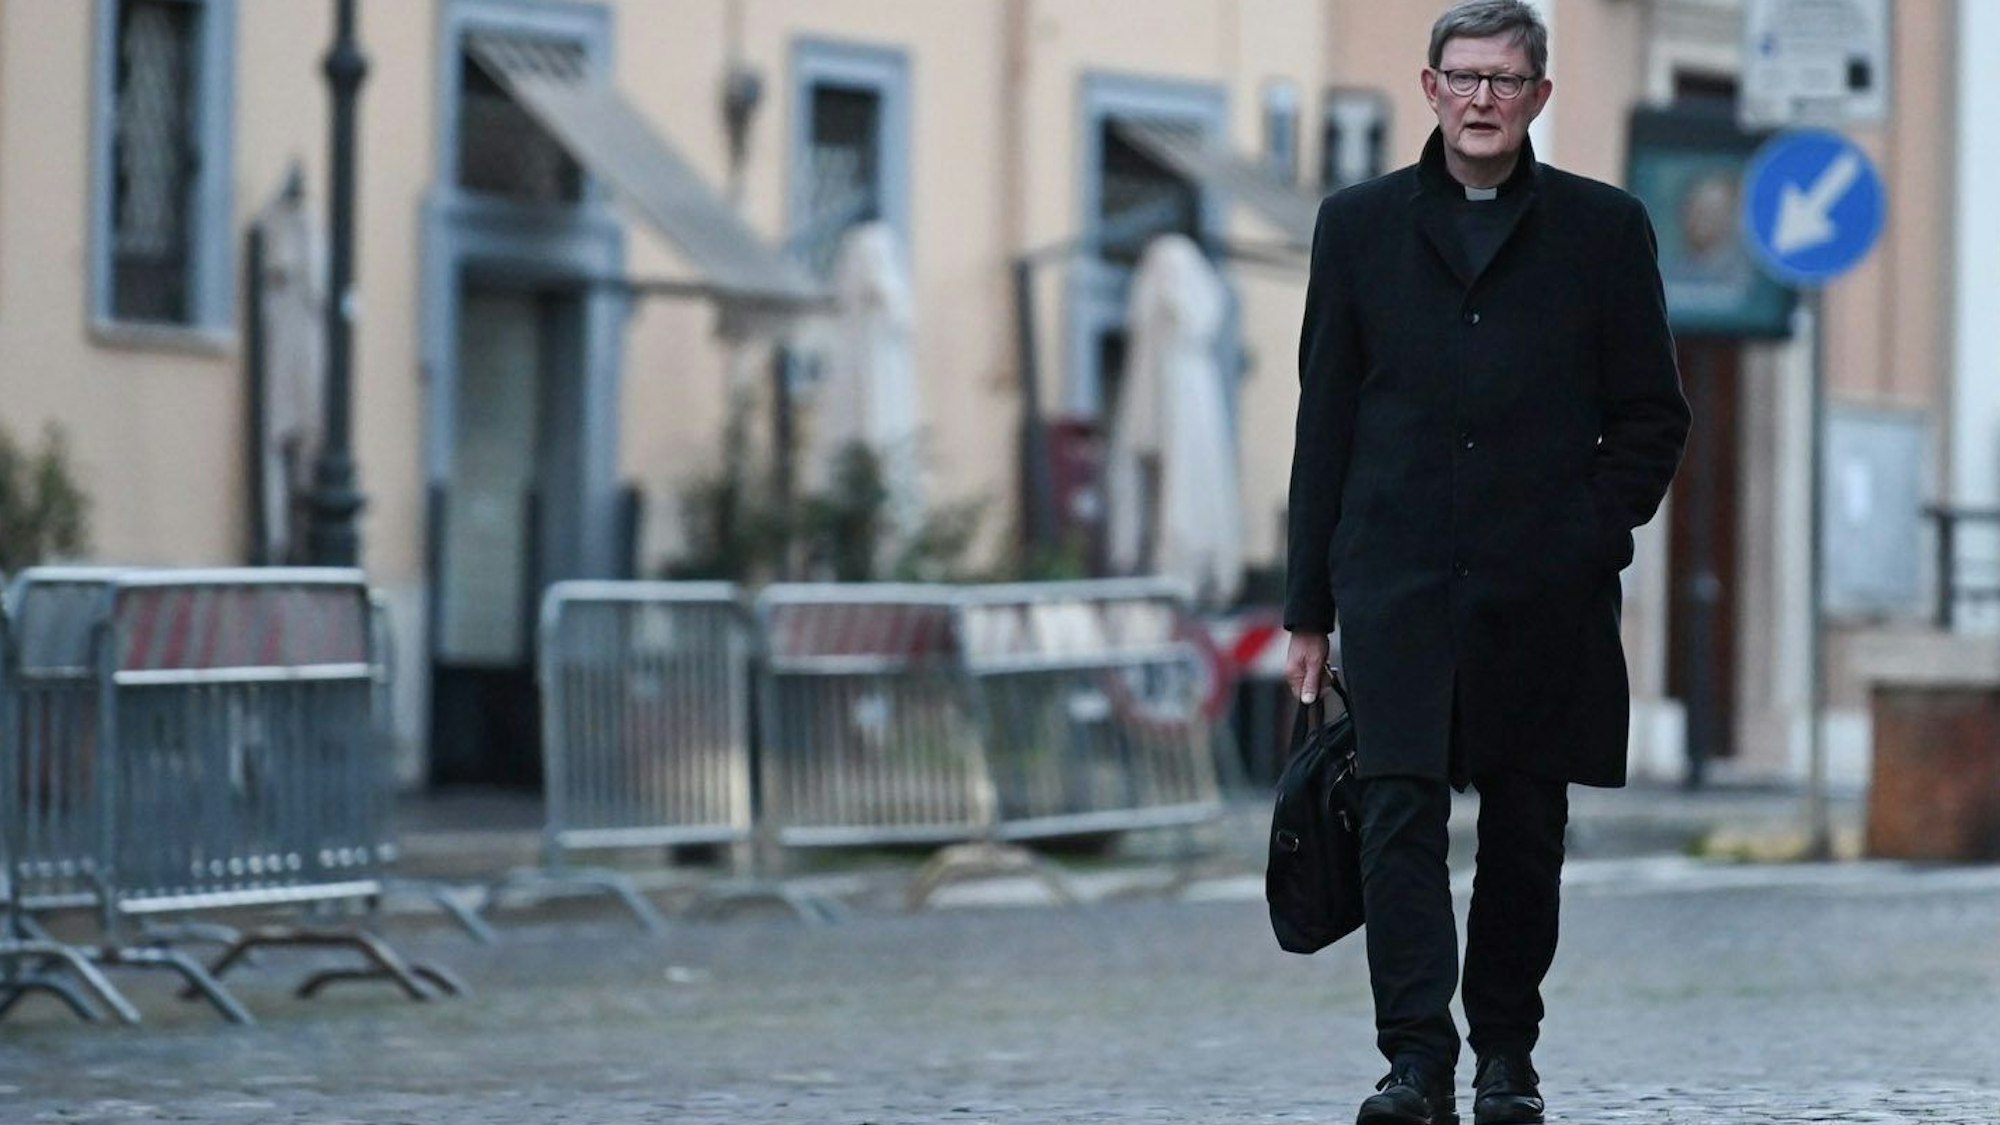 Der Kölner Erzbischof, Kardinal Rainer Woelki, ist mit einer schwarzen Aktentasche zu Fuß auf dem Weg in den Vatikan.